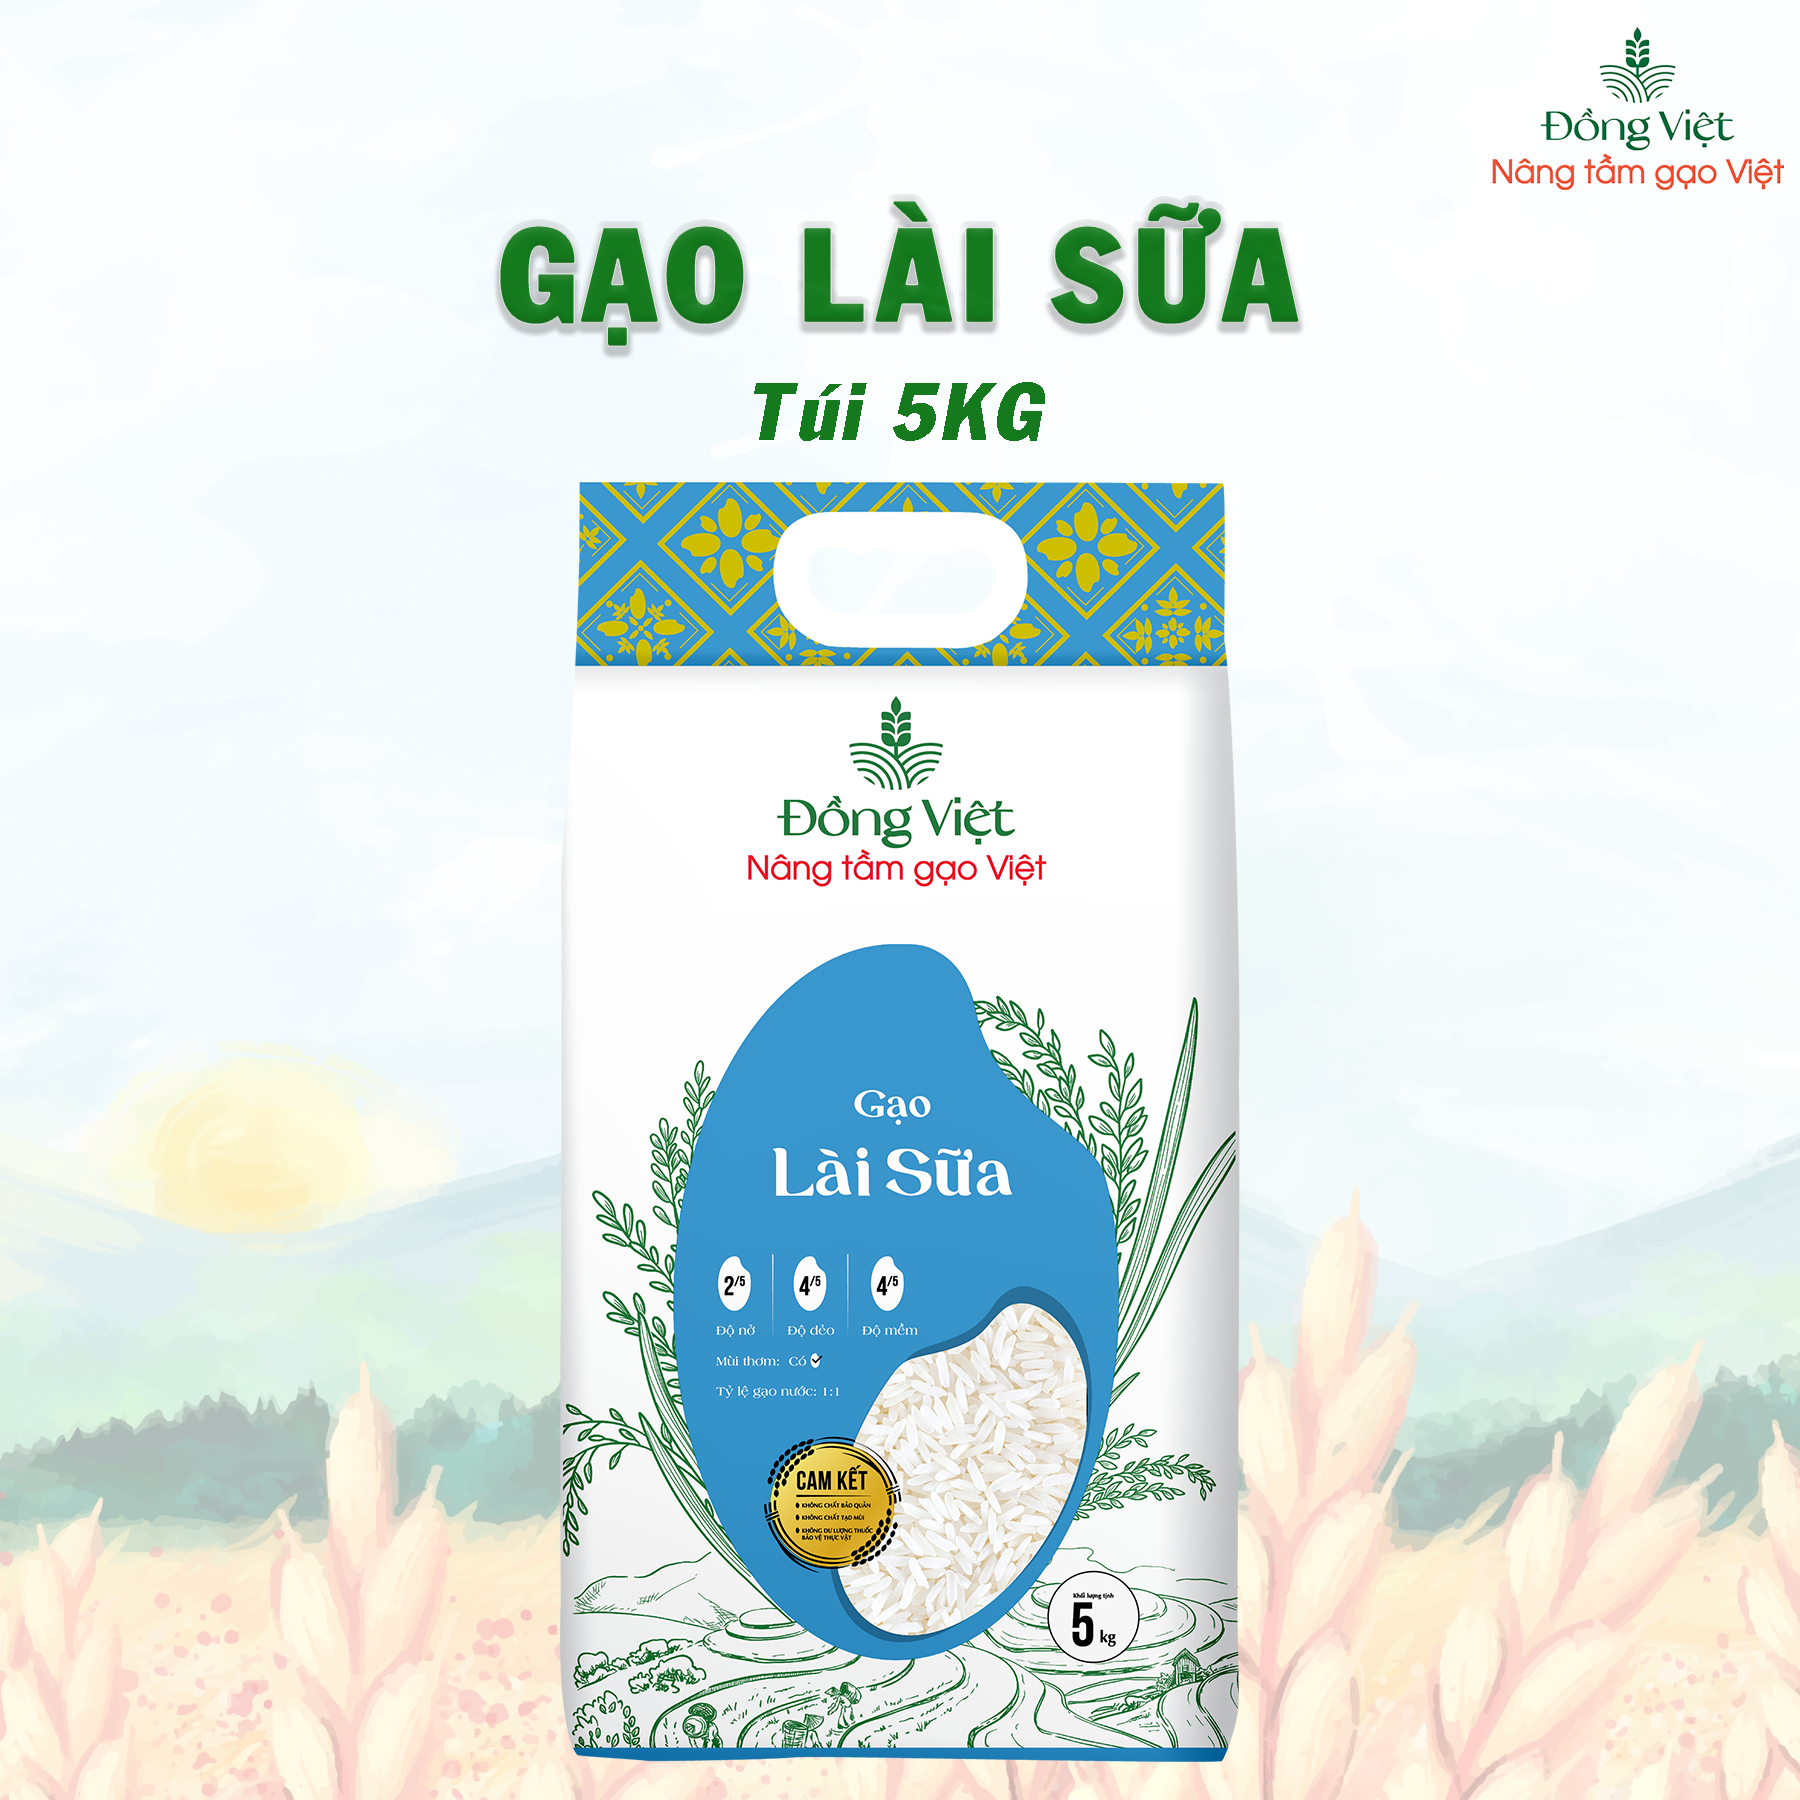 Gạo Lài Sữa ngon thơm Túi 5KG Gạo Đồng Việt